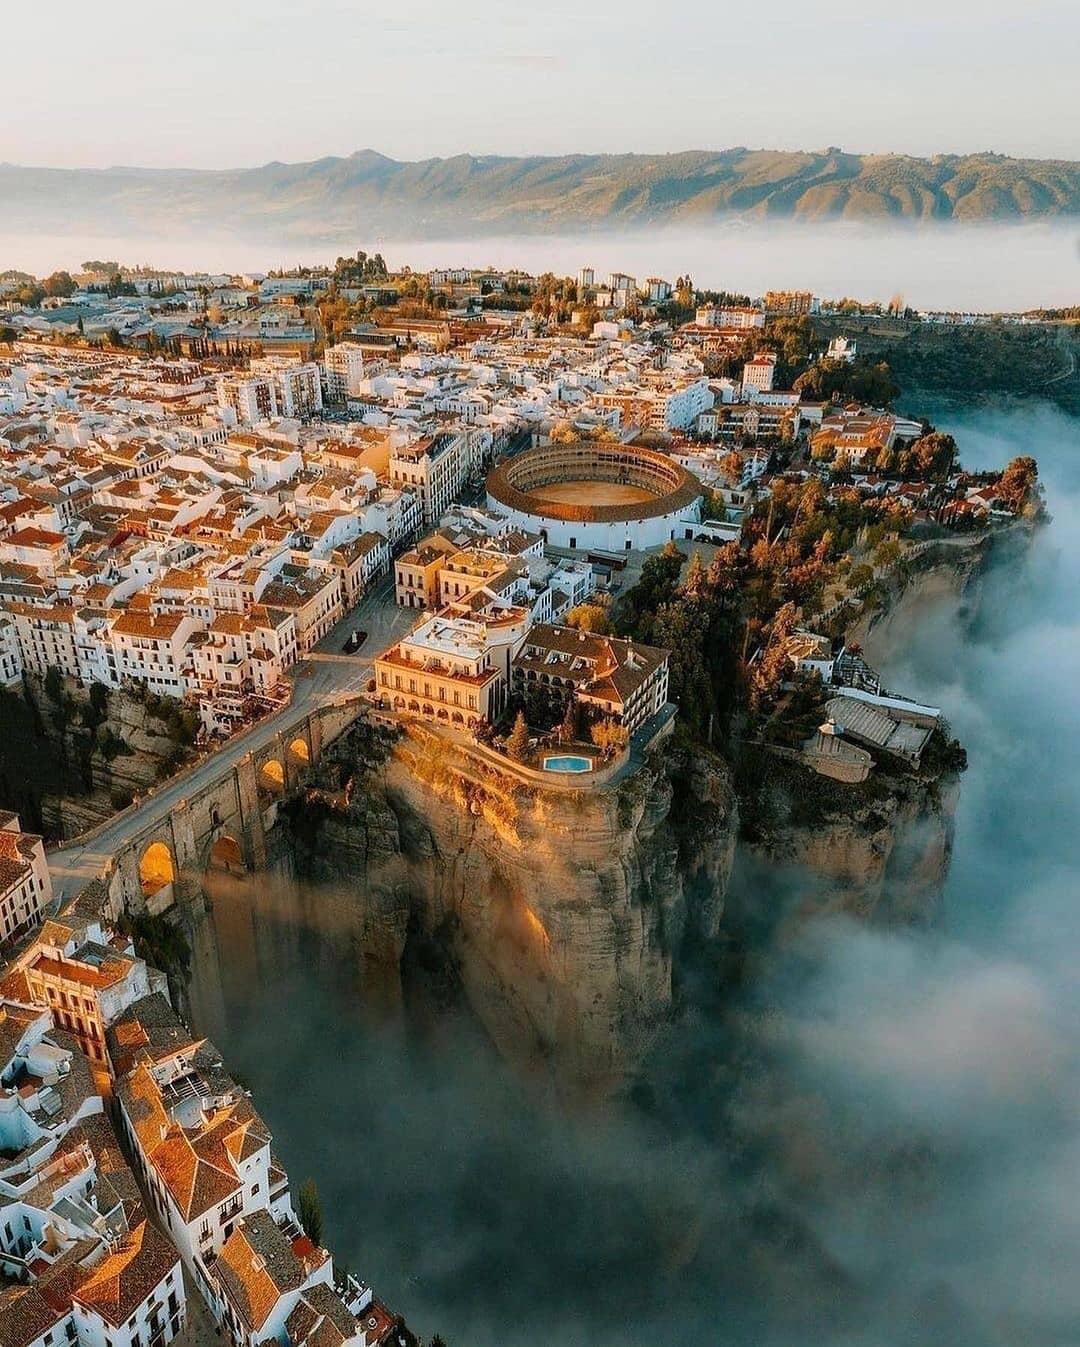 Thị trấn nằm trên vách núi Ronda ở Tây Ban Nha. Ảnh: @time2board